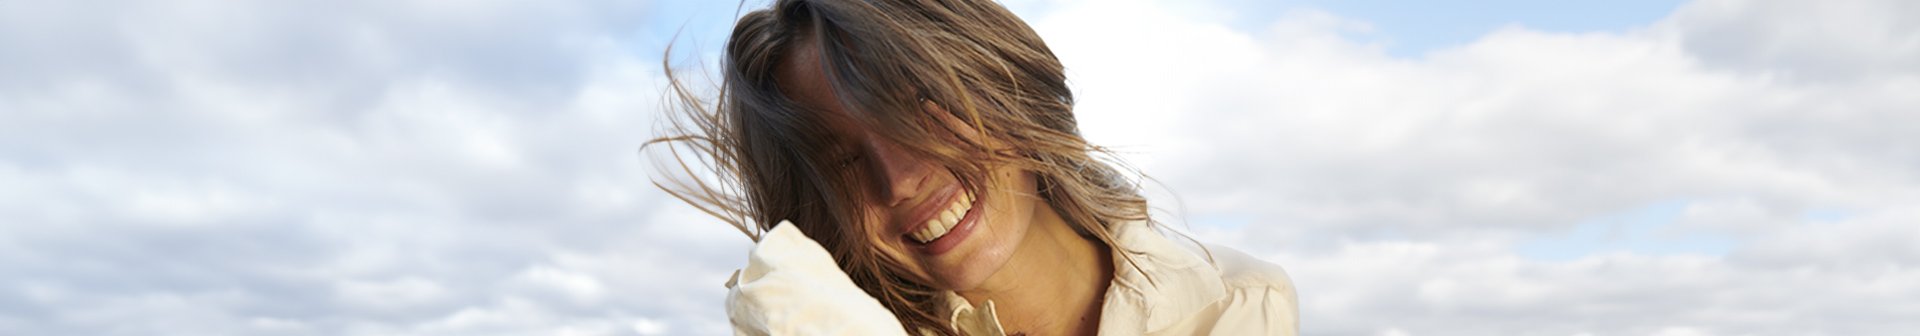 Eine lächelnde junge Frau wehen die Haare vor ihr Gesicht